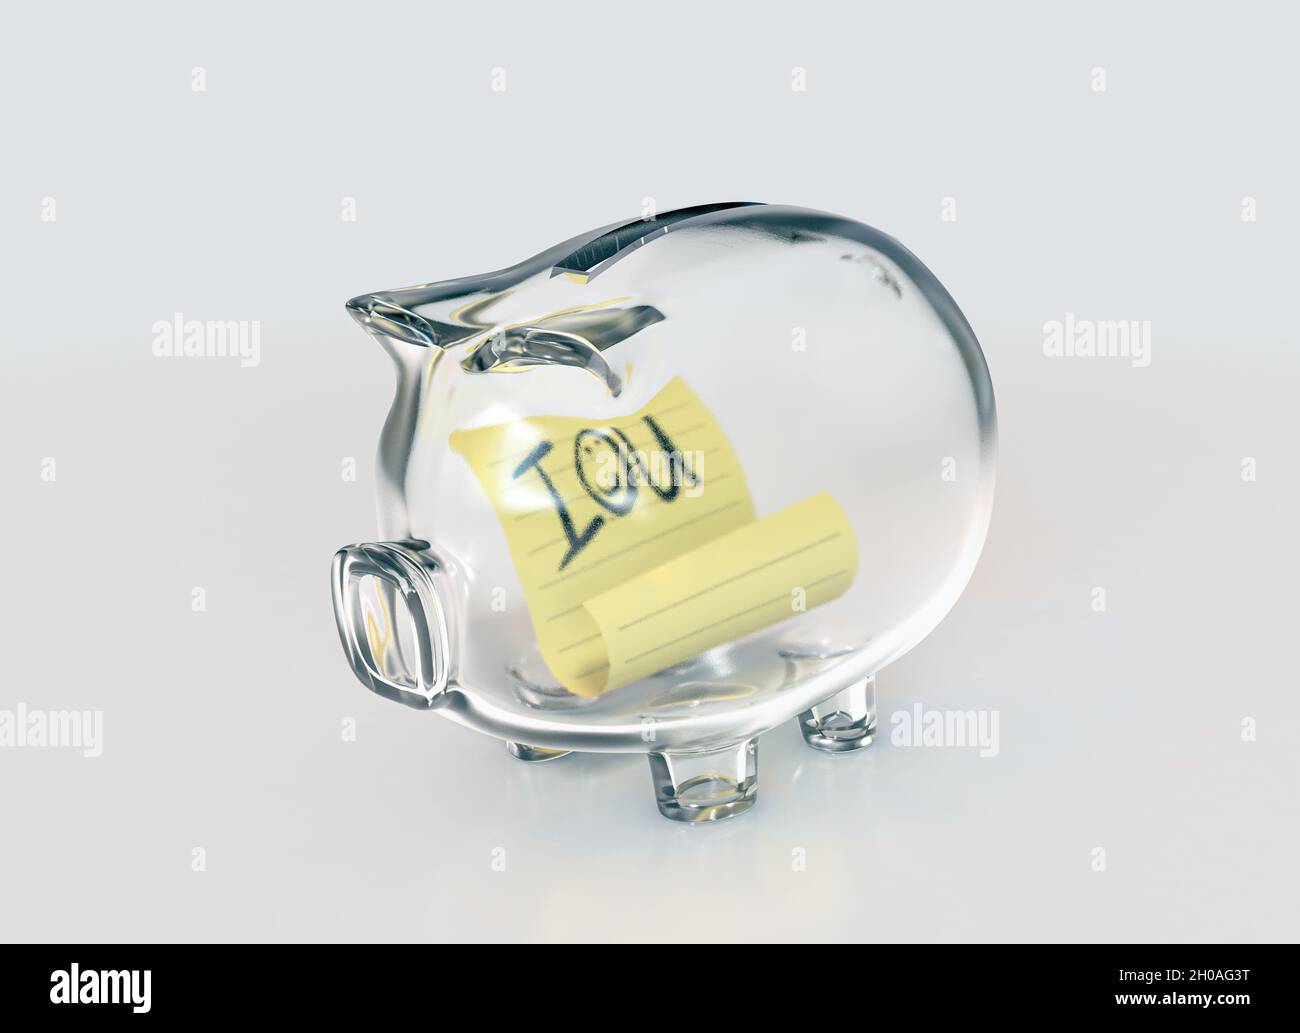 Un banco di piggy in vetro trasparente vuoto su uno sfondo bianco isolato con una nota IOU gialla scritta a mano all'interno - rendering 3D Foto Stock